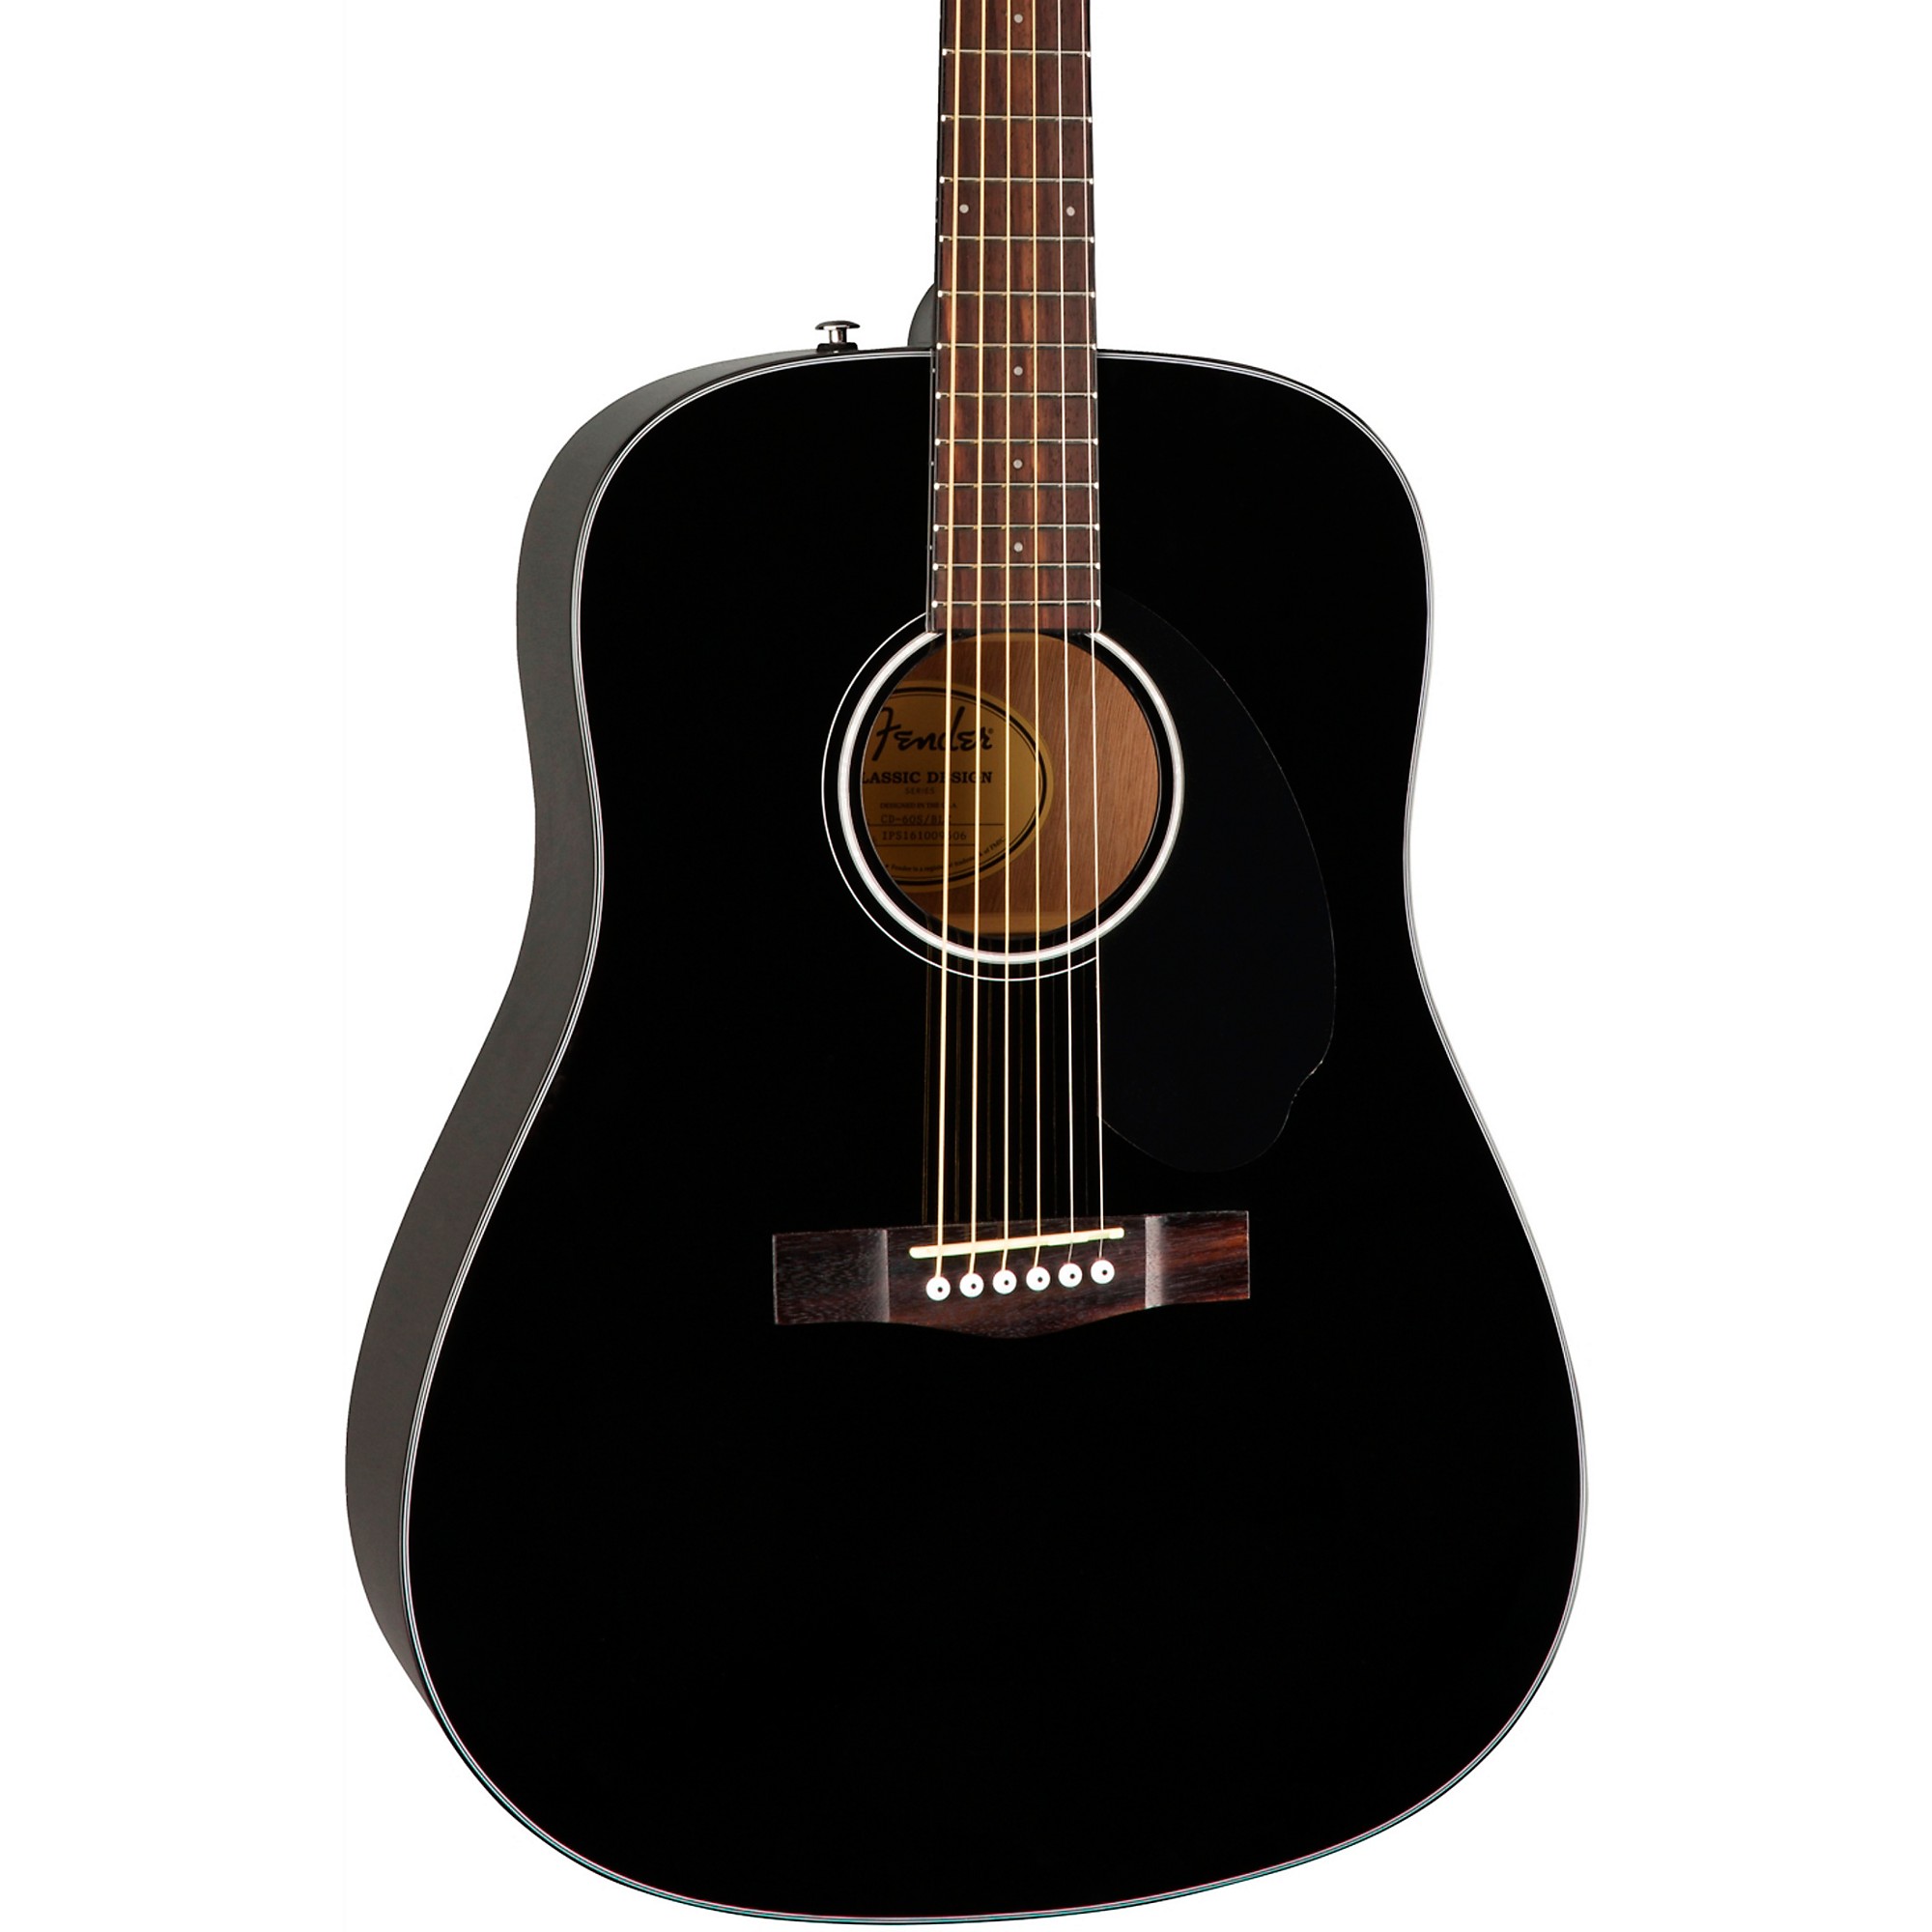 Гитара фендер сд 60. Fender CD-60. Акустическая гитара Fender CD-60. Гитара акустическая черная Fender. Гитара Фендер акустика черная.